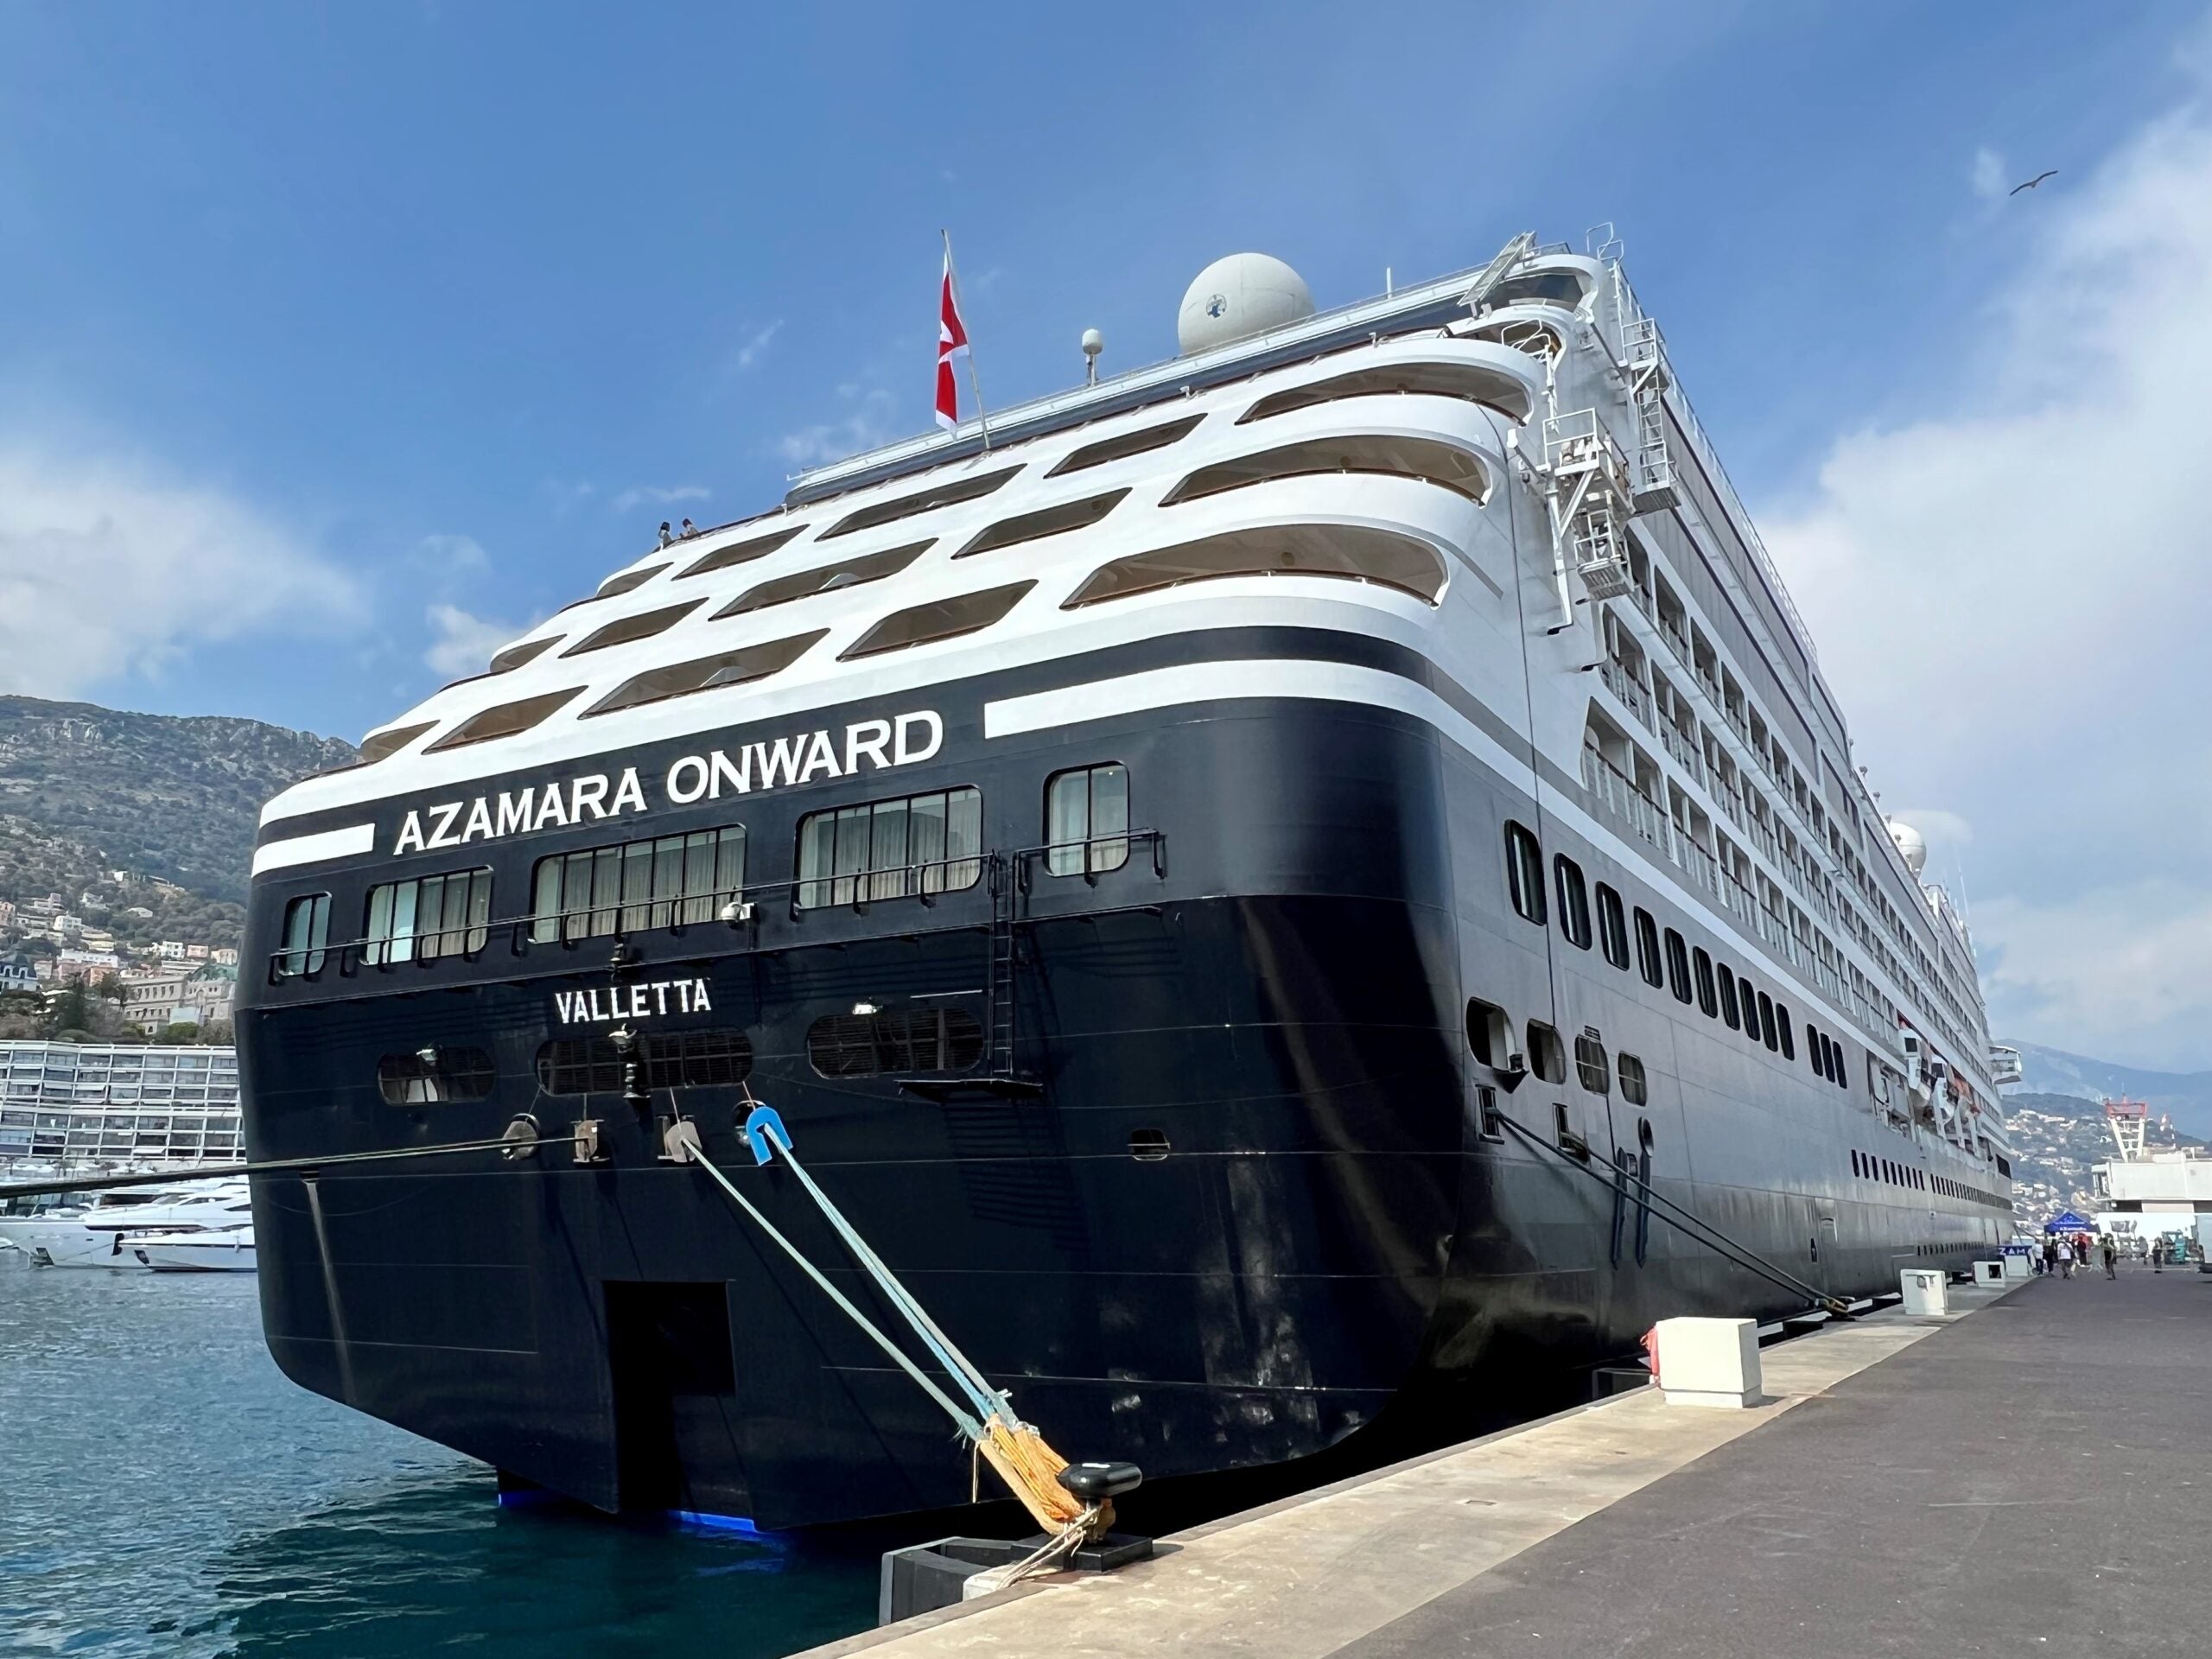 The Azamara cruise ship Azamara Onwar